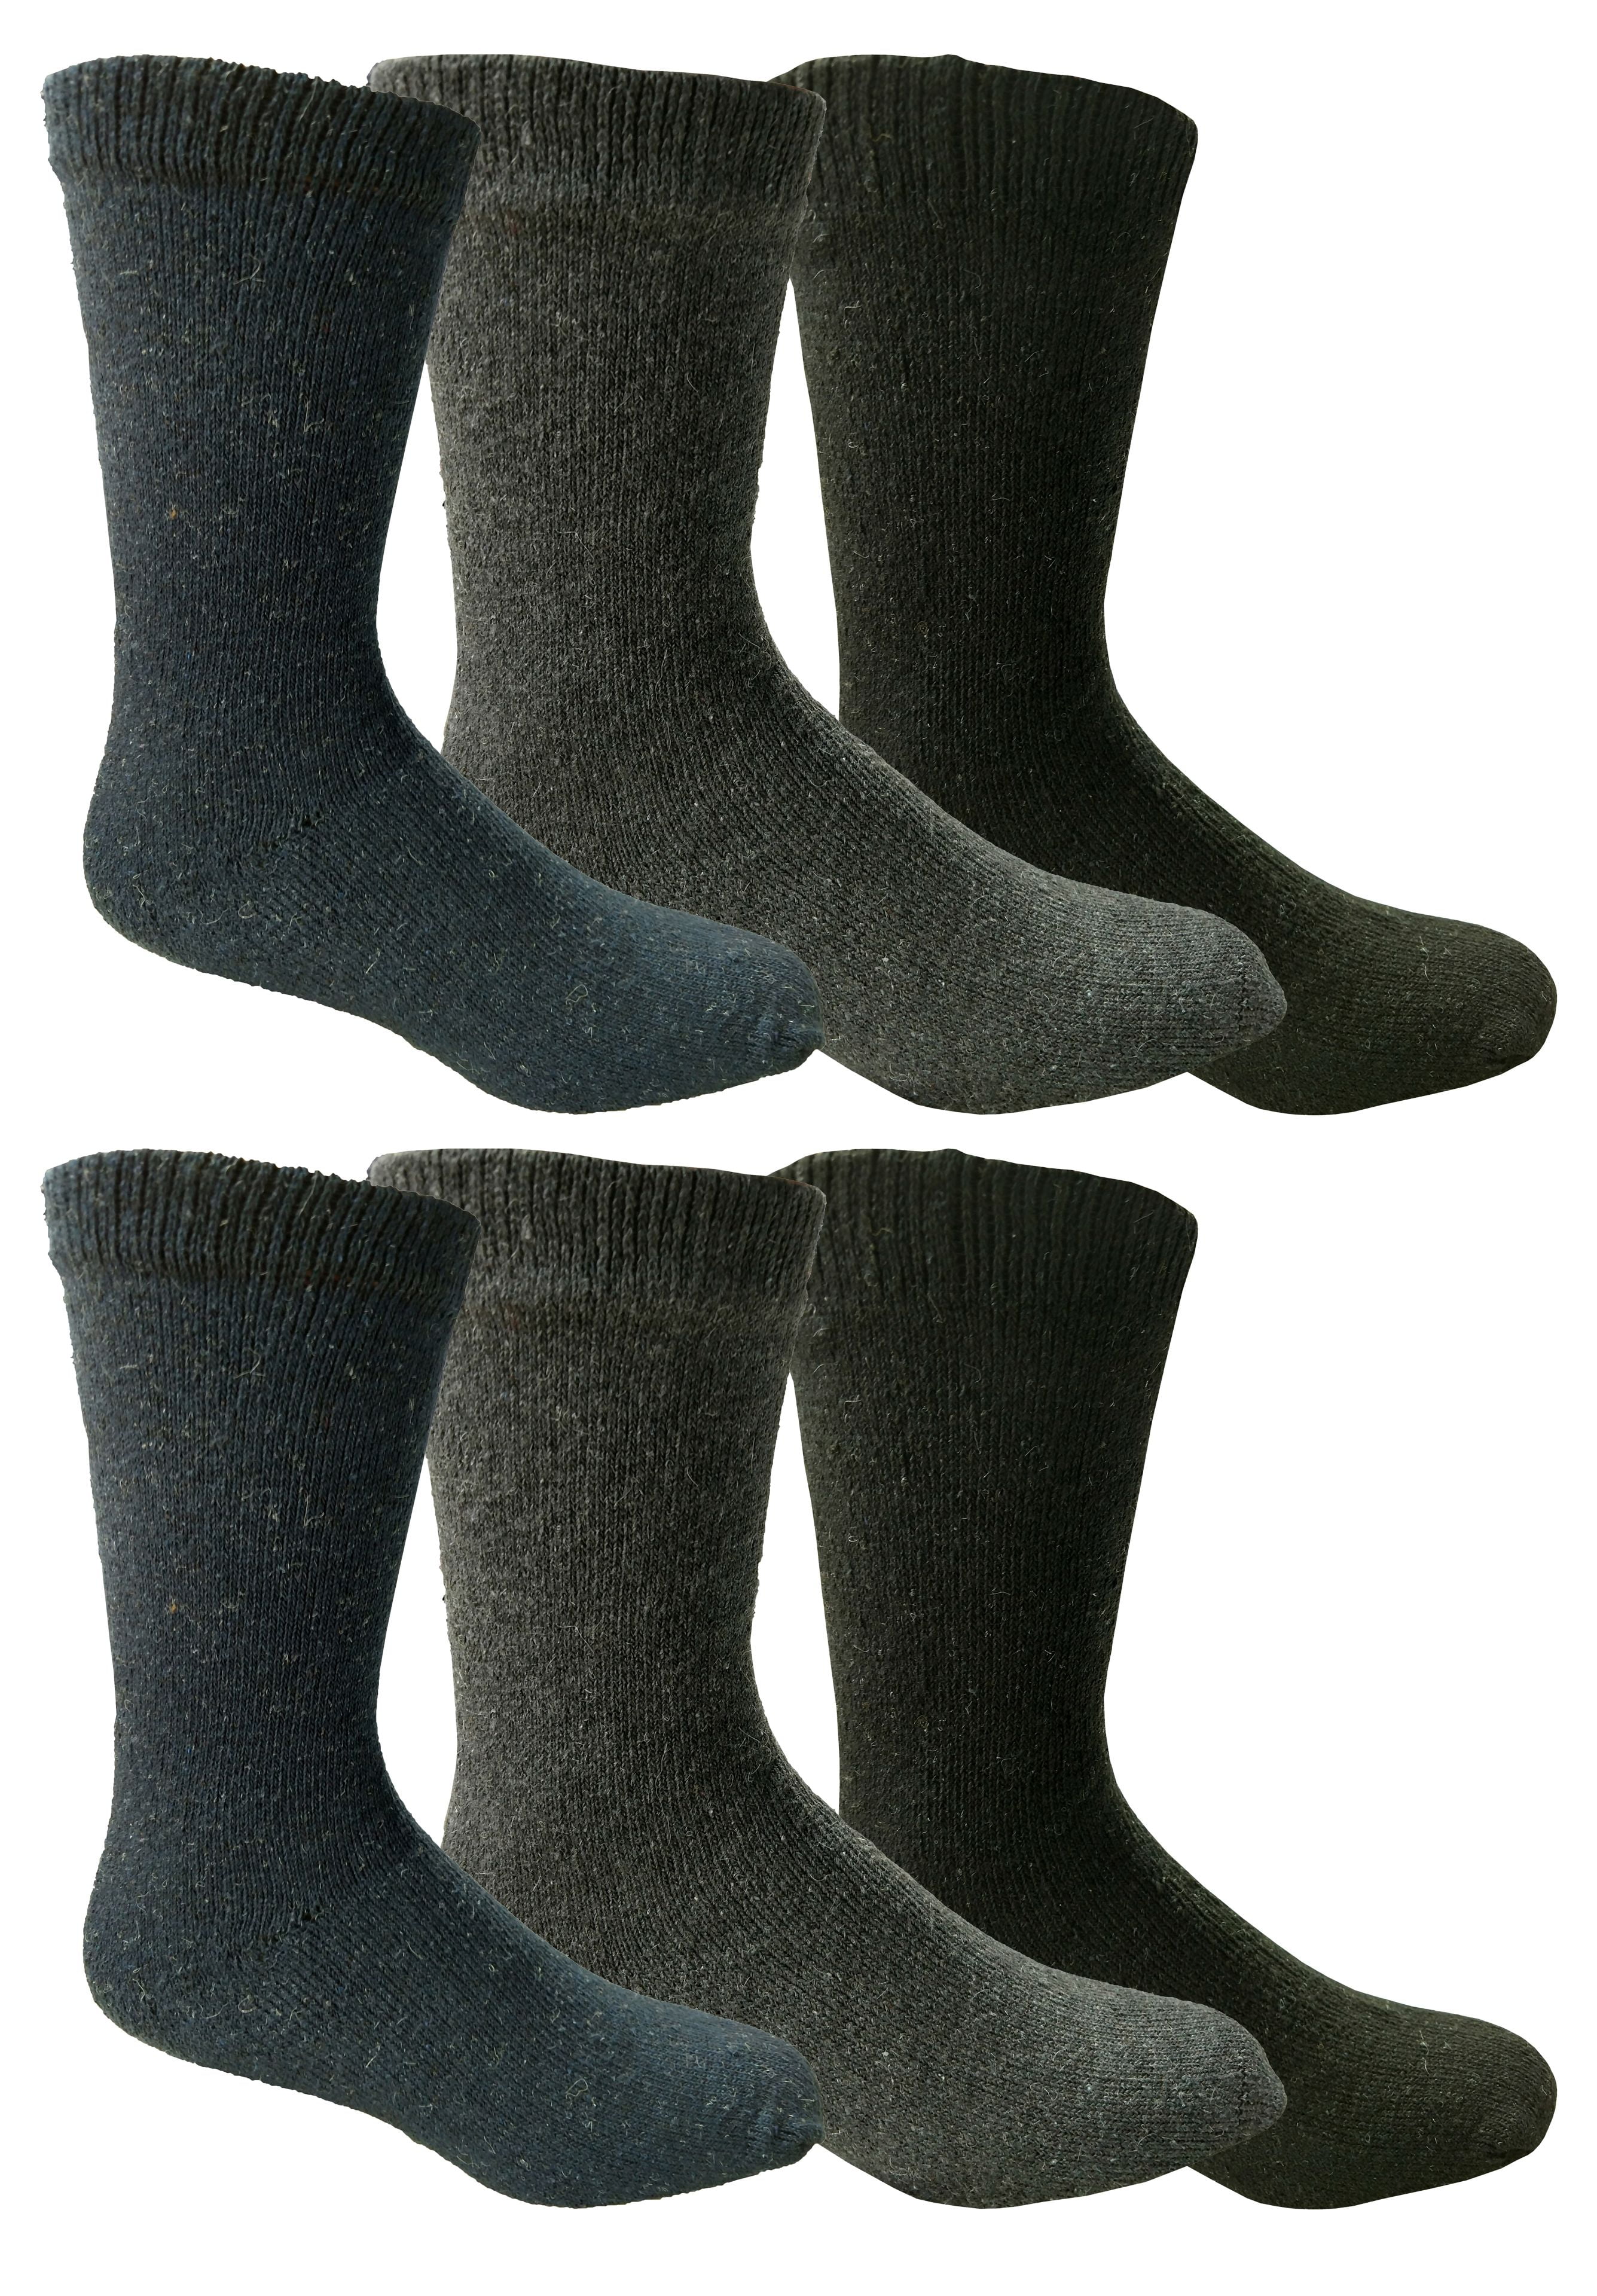 Men's Socks Thick Work 6-11 Heavy Duty Thermal Winter Warm Foot Wear 3 6 12 Pair 